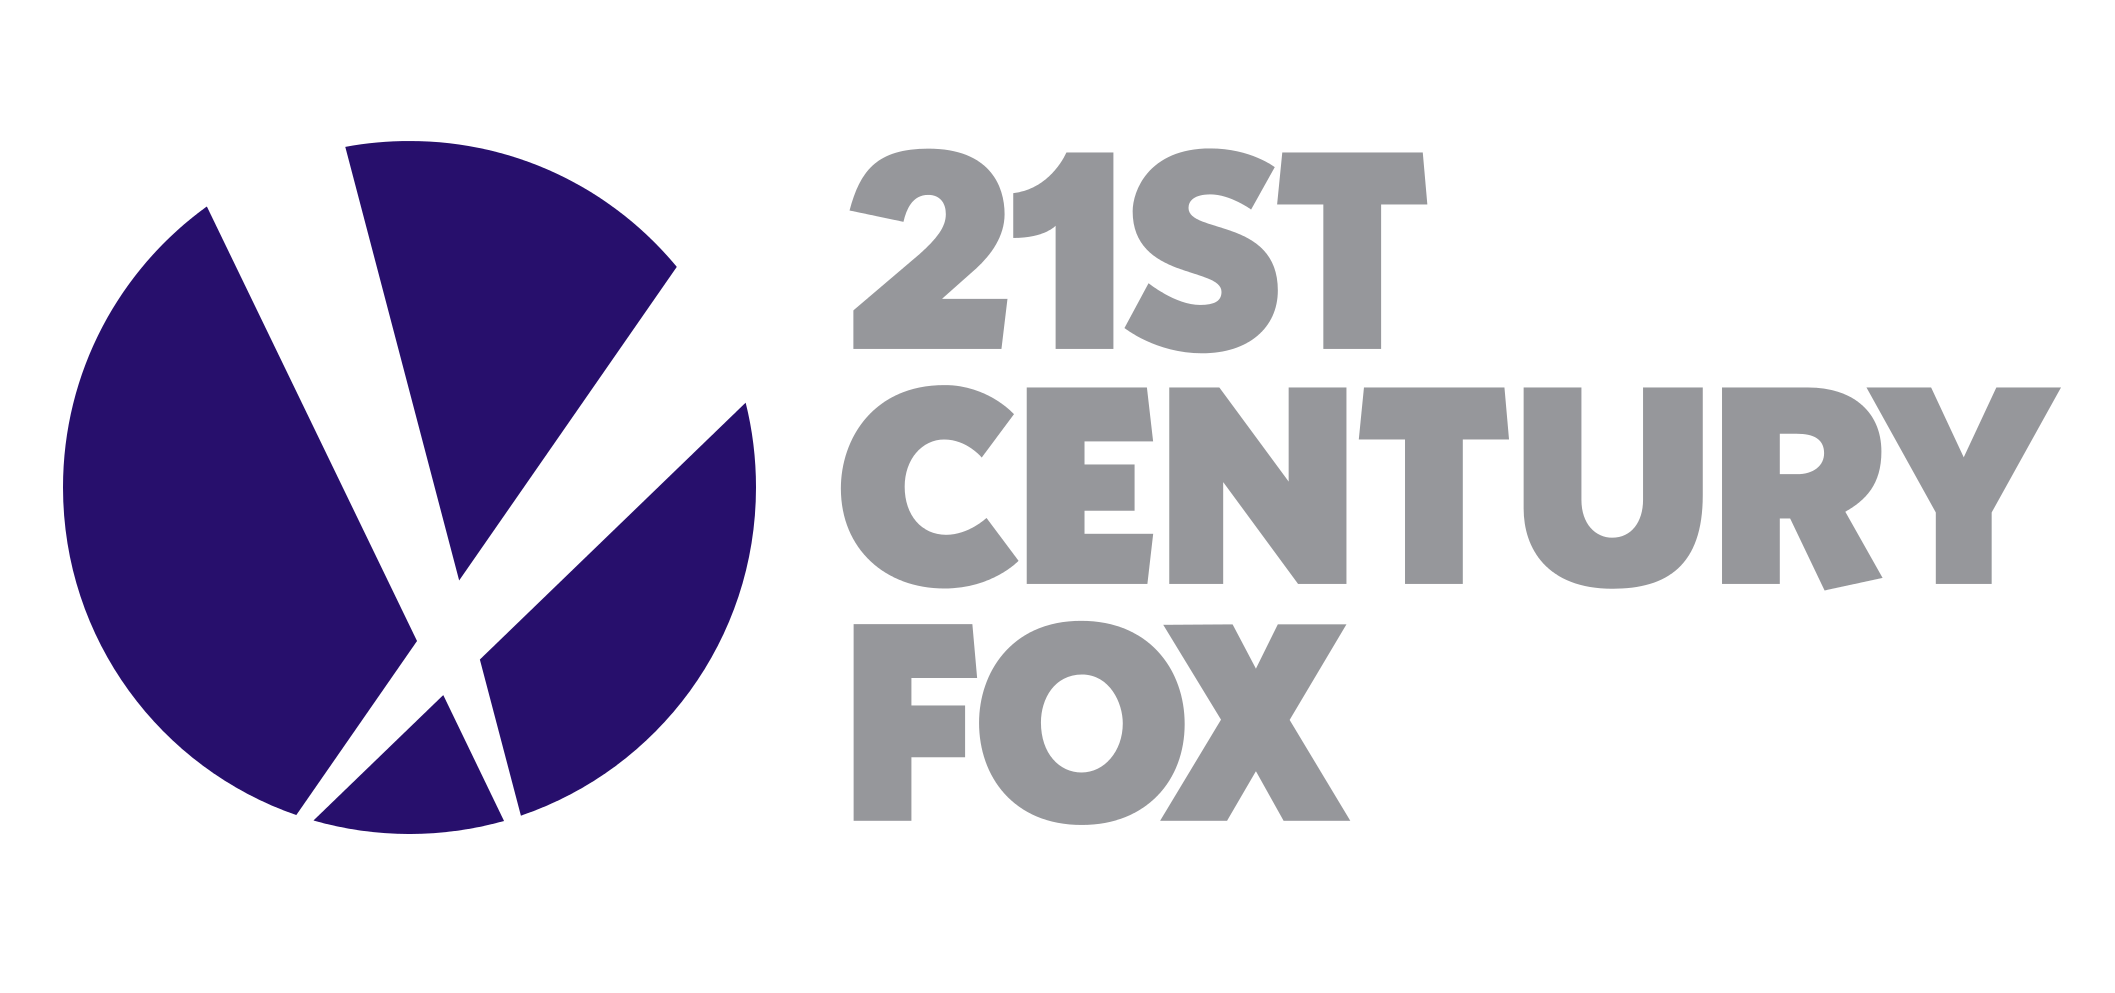 21st Century Fox Logo PNG--2115, 21st Century Fox Logo PNG - Free PNG